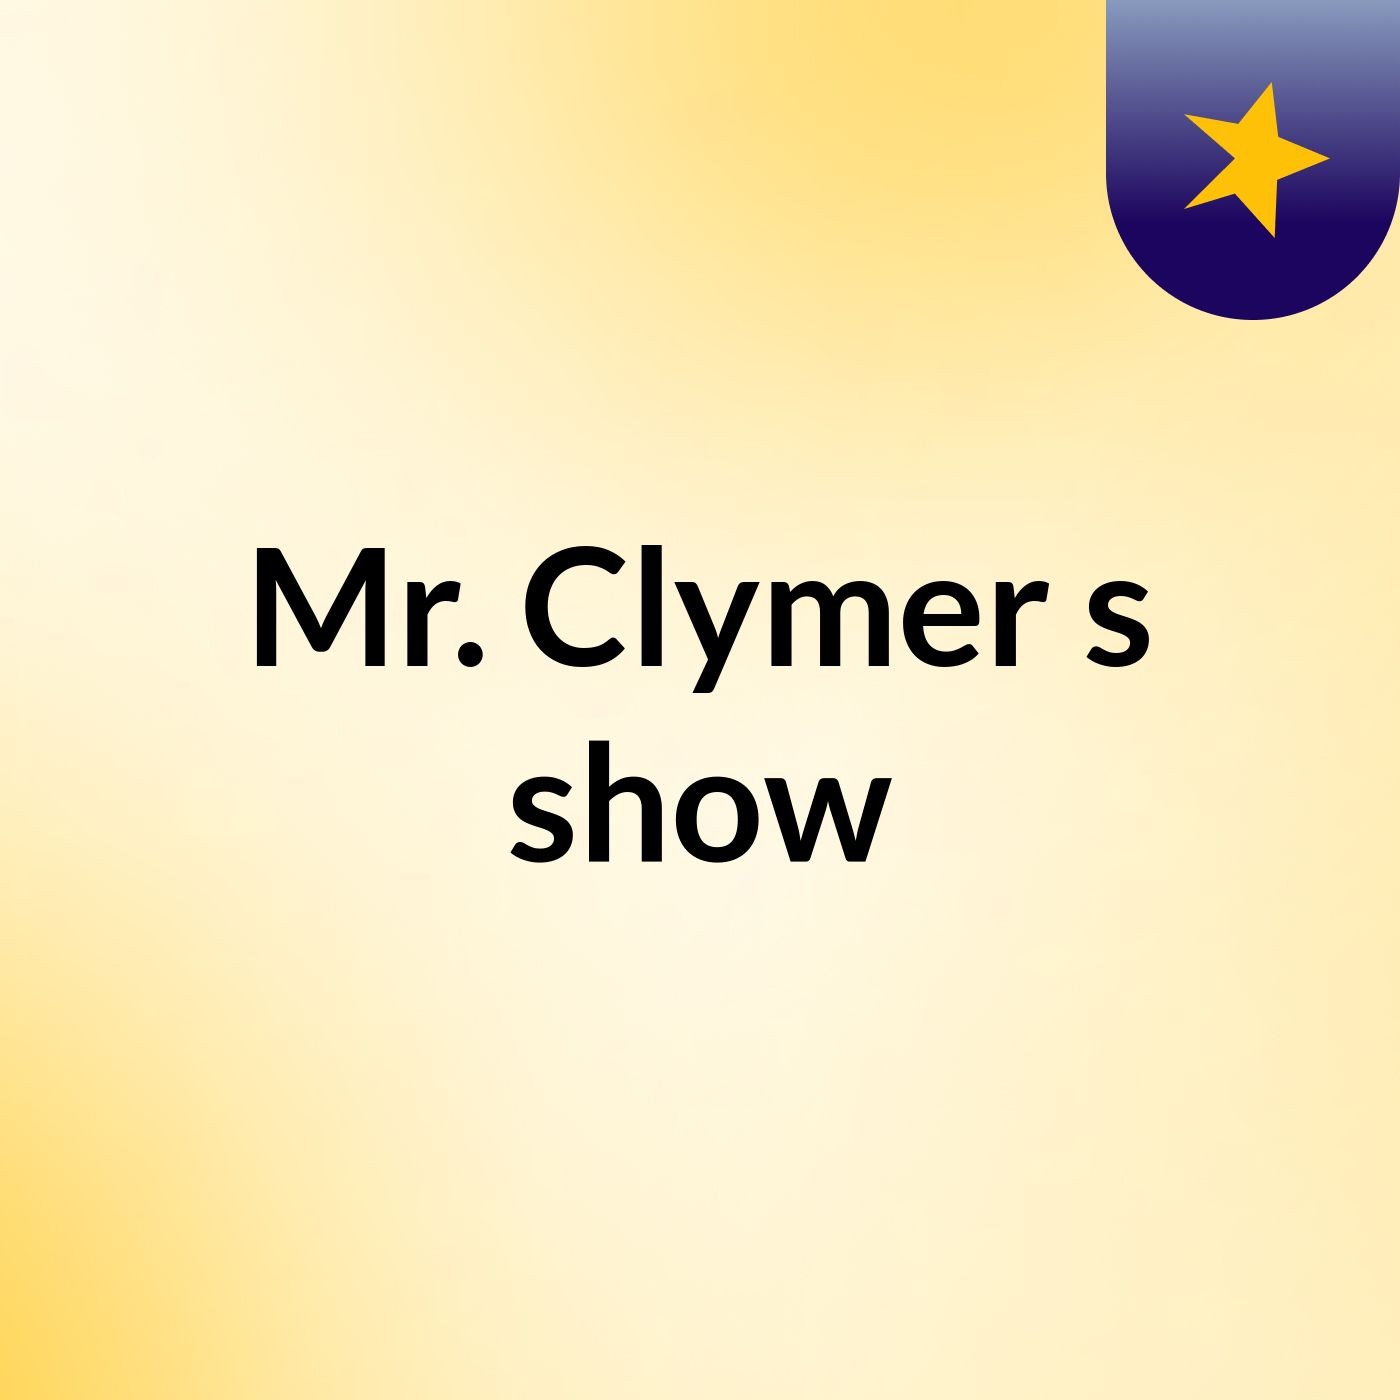 Mr. Clymer's show